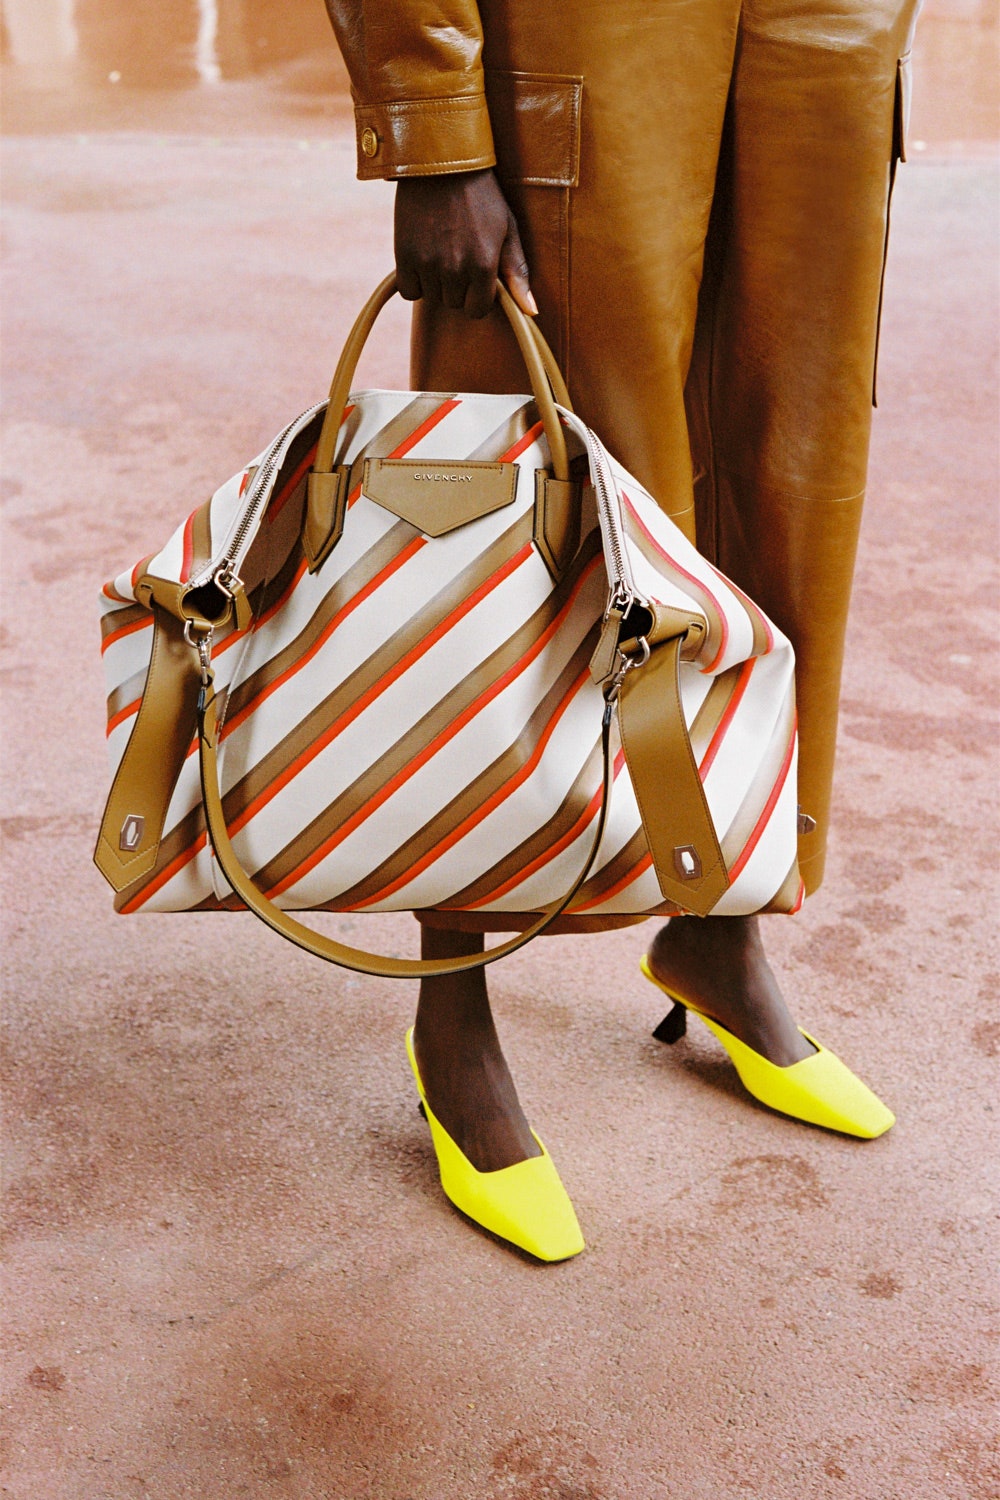 Мягкая сумка Givenchy — самое удачное вложение средств в преддверии осени